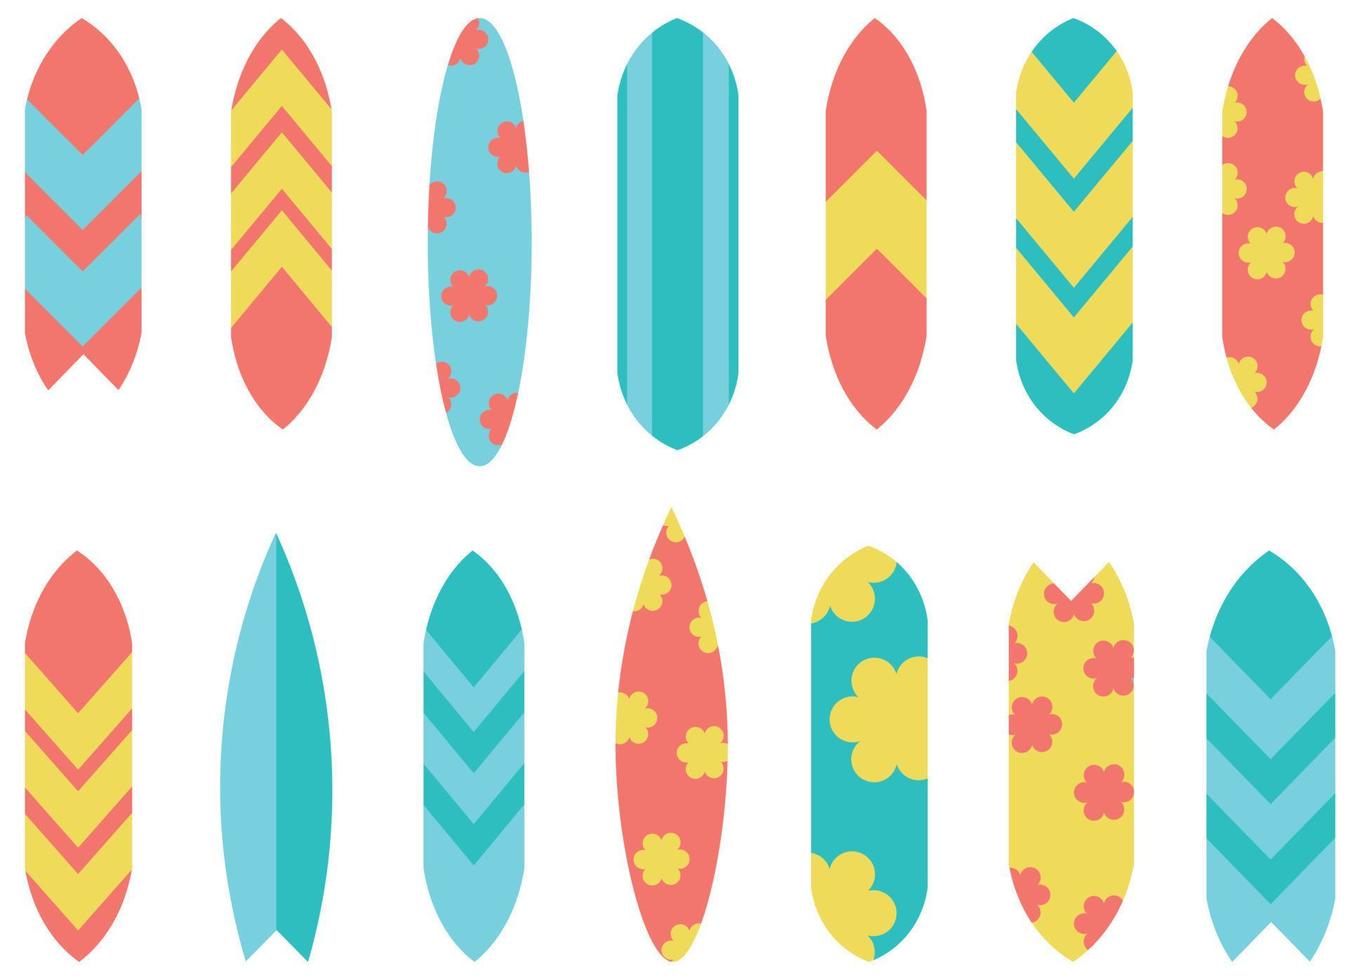 isoliert surfbrett verschiedene muster und farben illustration. Surfbrett-Illustration vektor